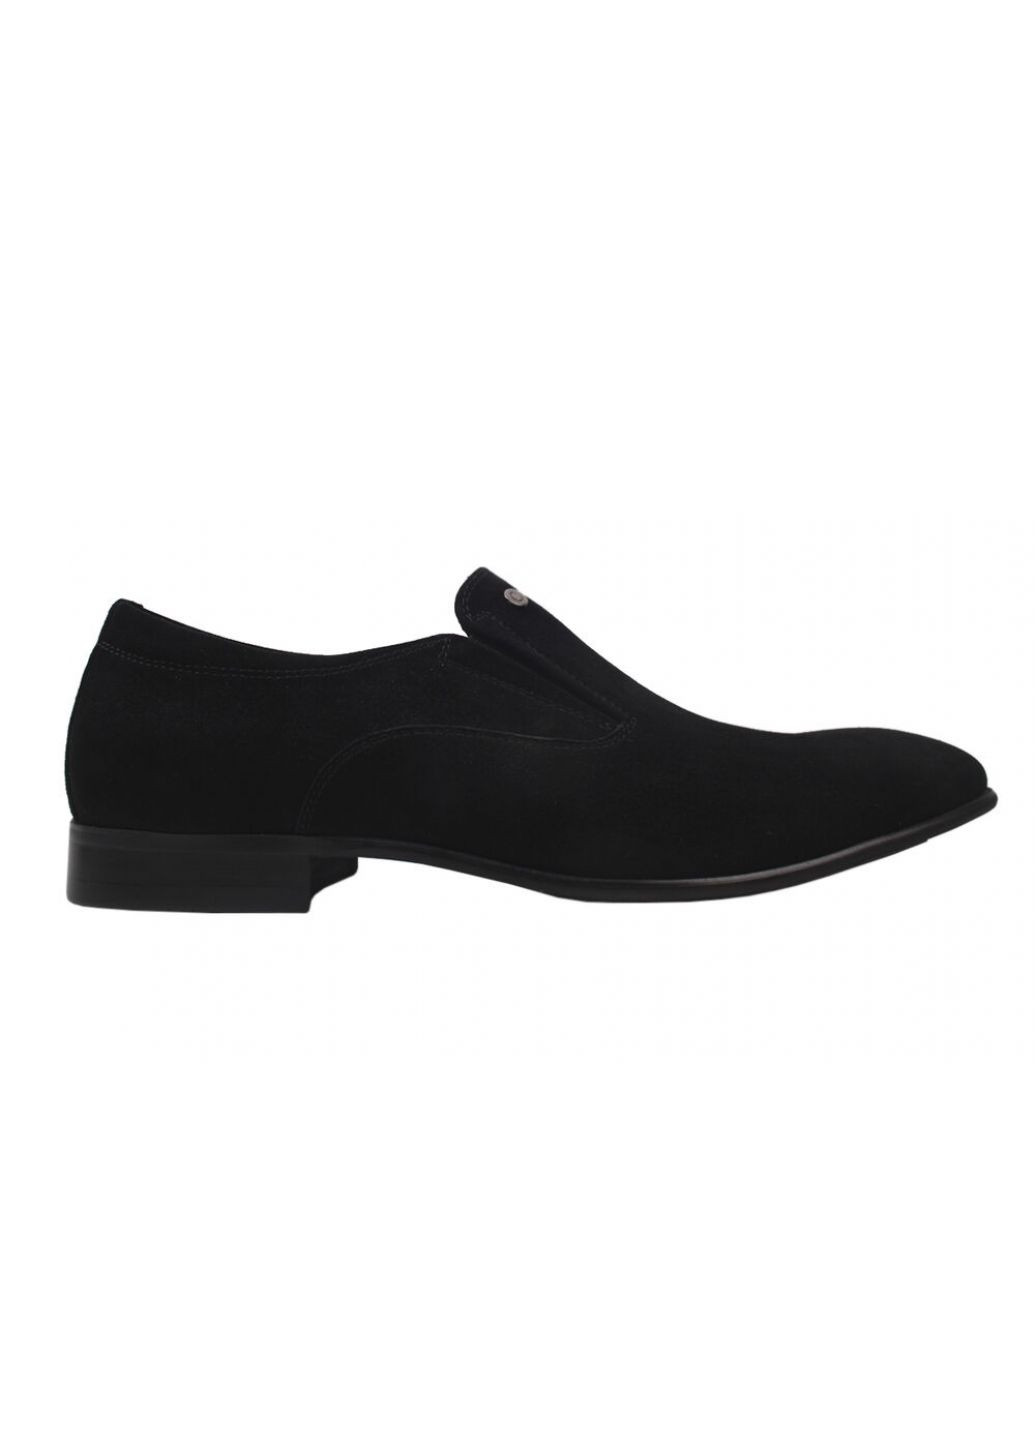 Черные туфли класика мужские натуральная замша, цвет черный Clemento